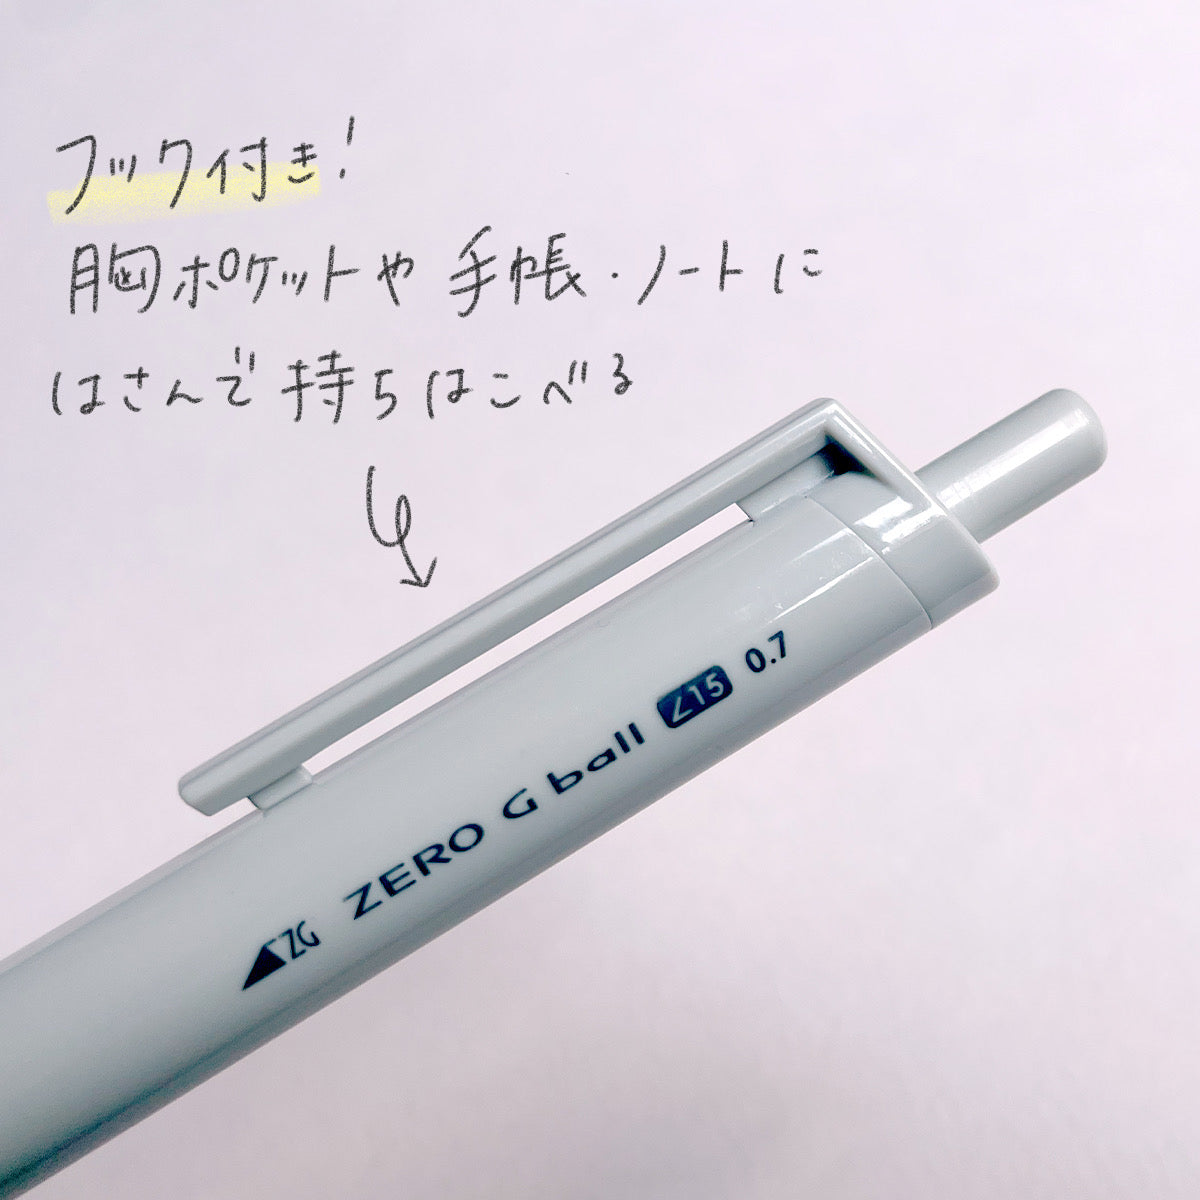 [0.7mm] Oil-based ballpoint pen Zero G Ball 15°